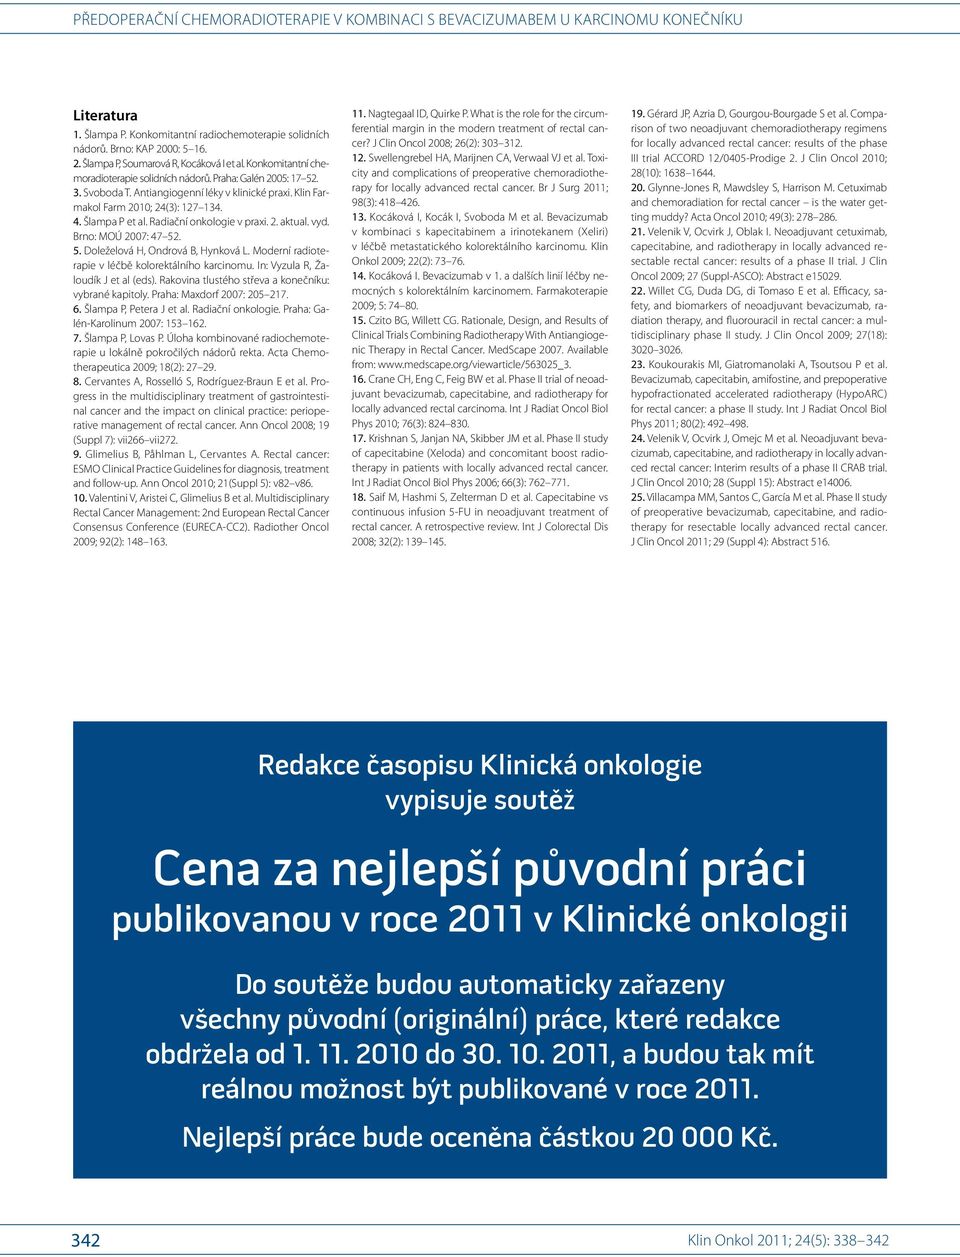 Brno: MOÚ 2007: 47 52. 5. Doleželová H, Ondrová B, Hynková L. Moderní radioterapie v léčbě kolorektálního karcinomu. In: Vyzula R, Žaloudík J et al (eds).